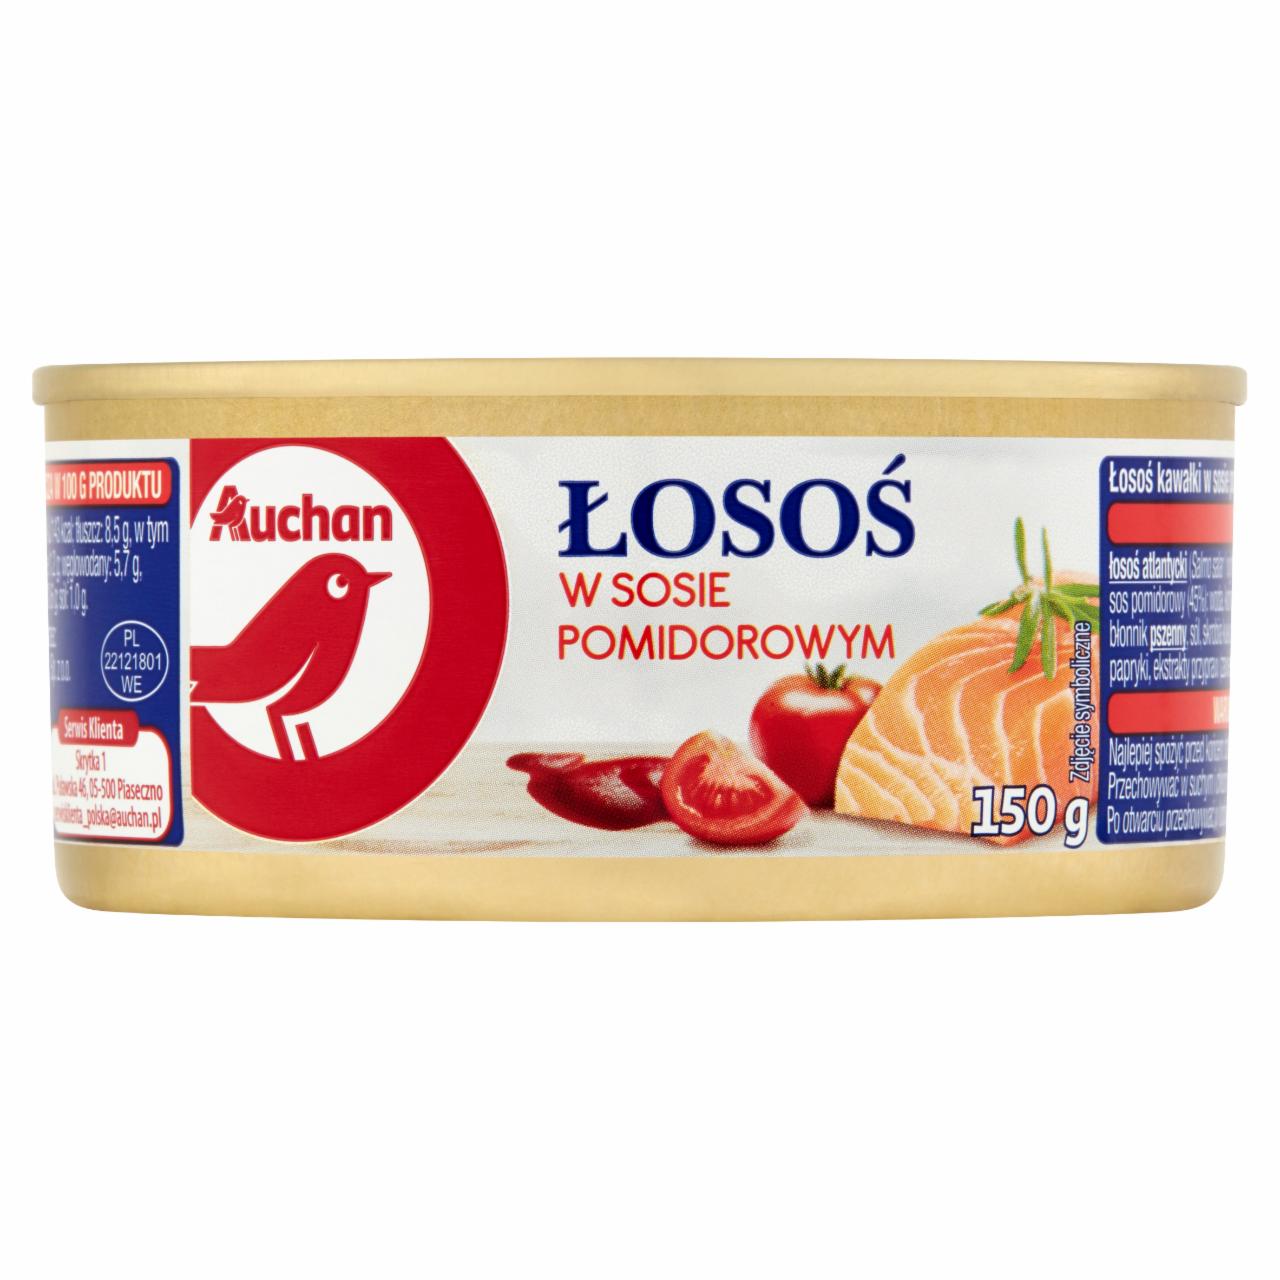 Zdjęcia - Auchan Łosoś w sosie pomidorowym 150 g